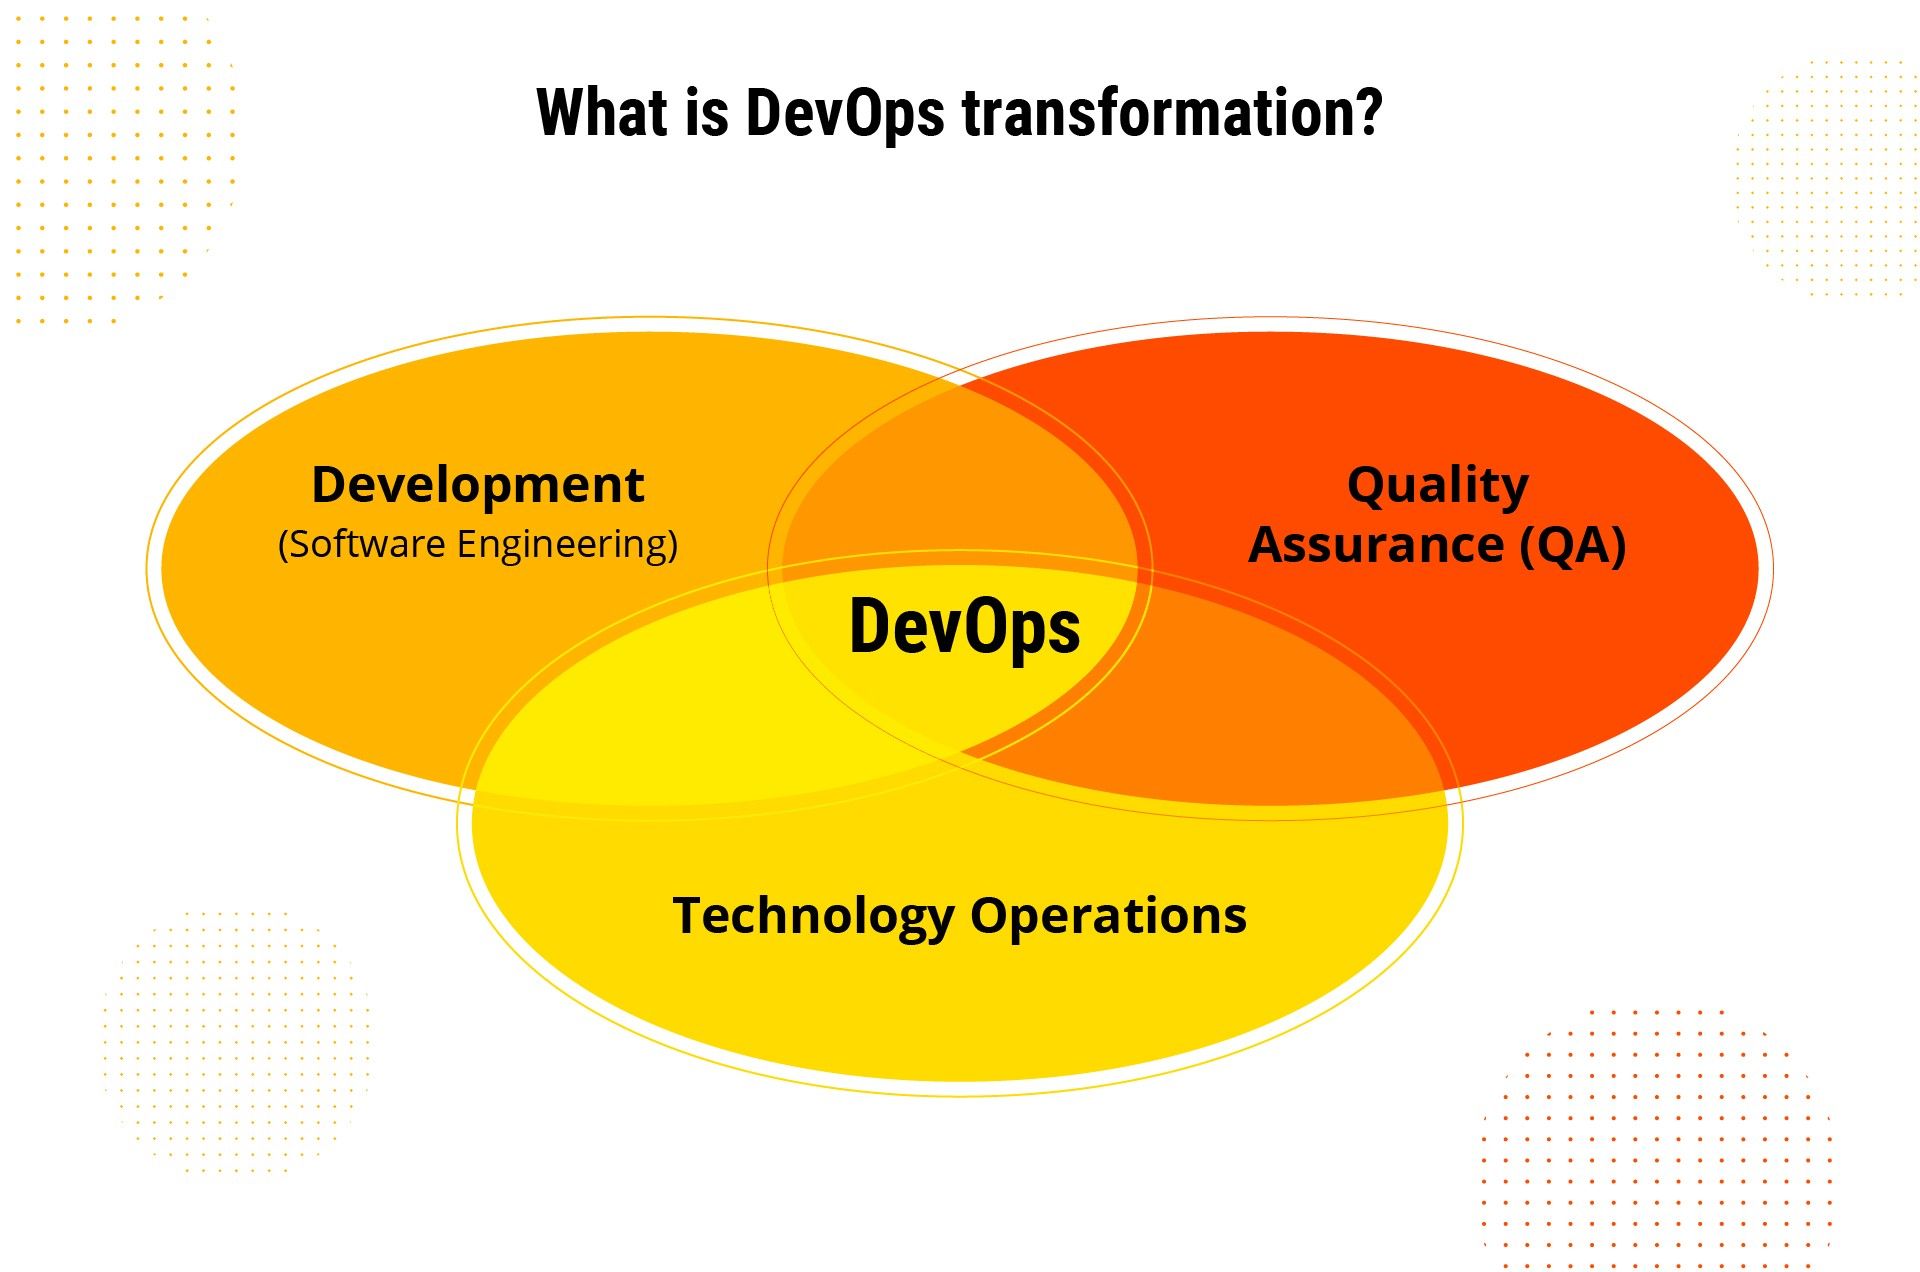 what is DevOps?